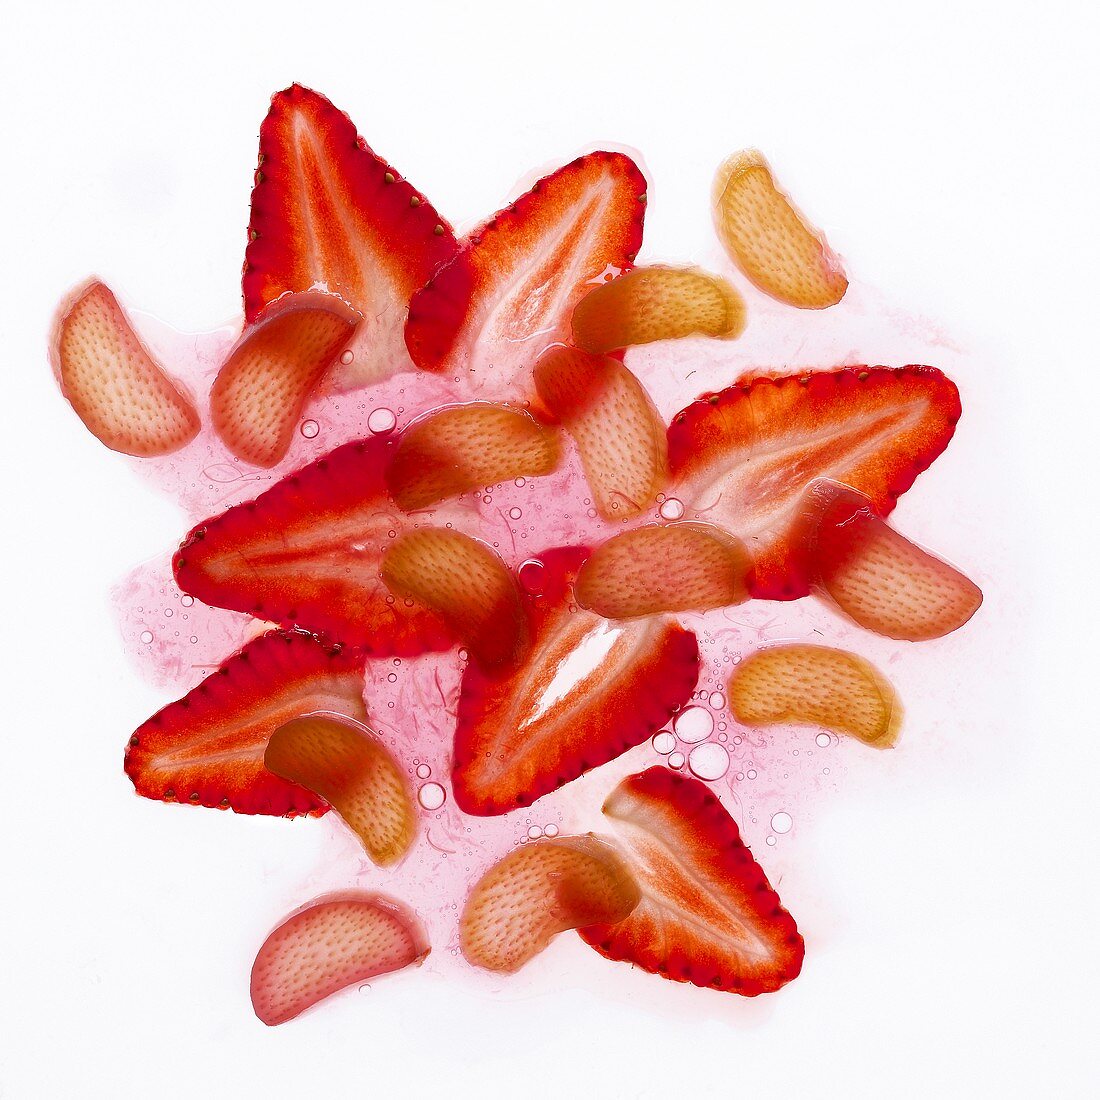 Erdbeer-Rhabarber-Gelee